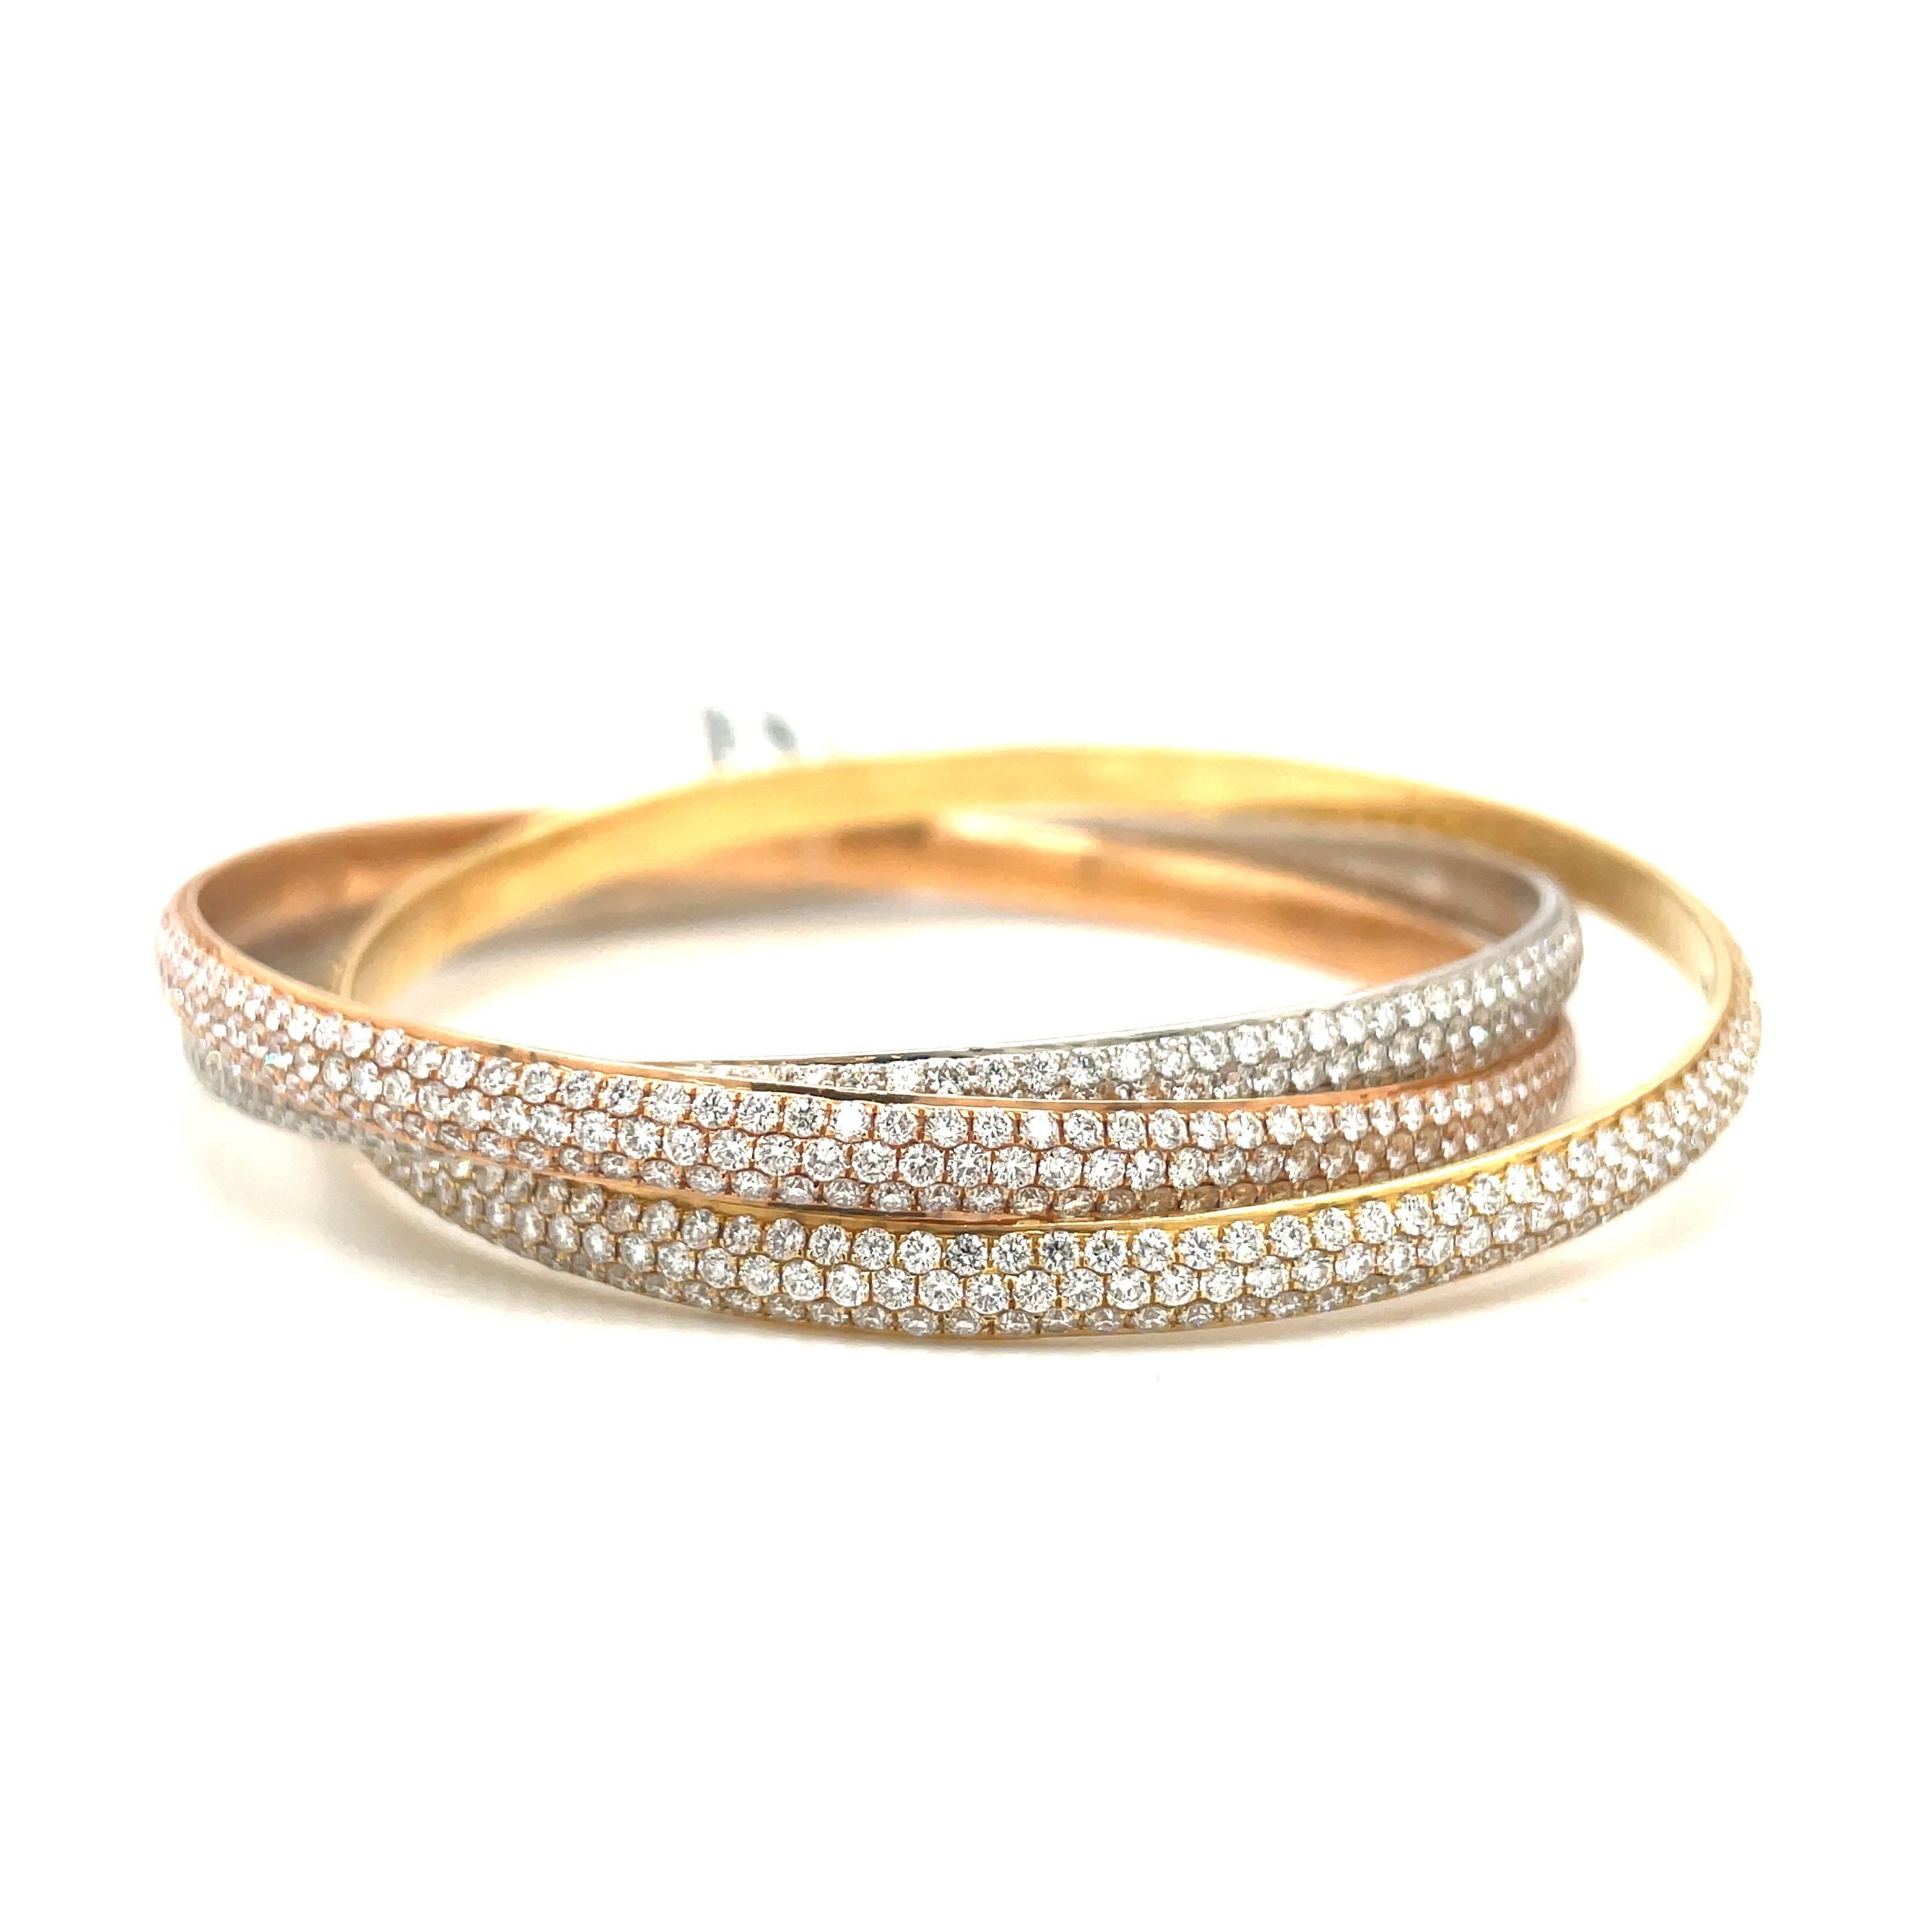 Conçu en or jaune, rose et blanc 18 carats, ce bracelet bangle roulant reste classique. Le bracelet est serti de 17,05 carats de diamants ronds de taille brillant. Chaque bracelet comporte trois rangées de diamants.
La mesure intérieure est de 2,5